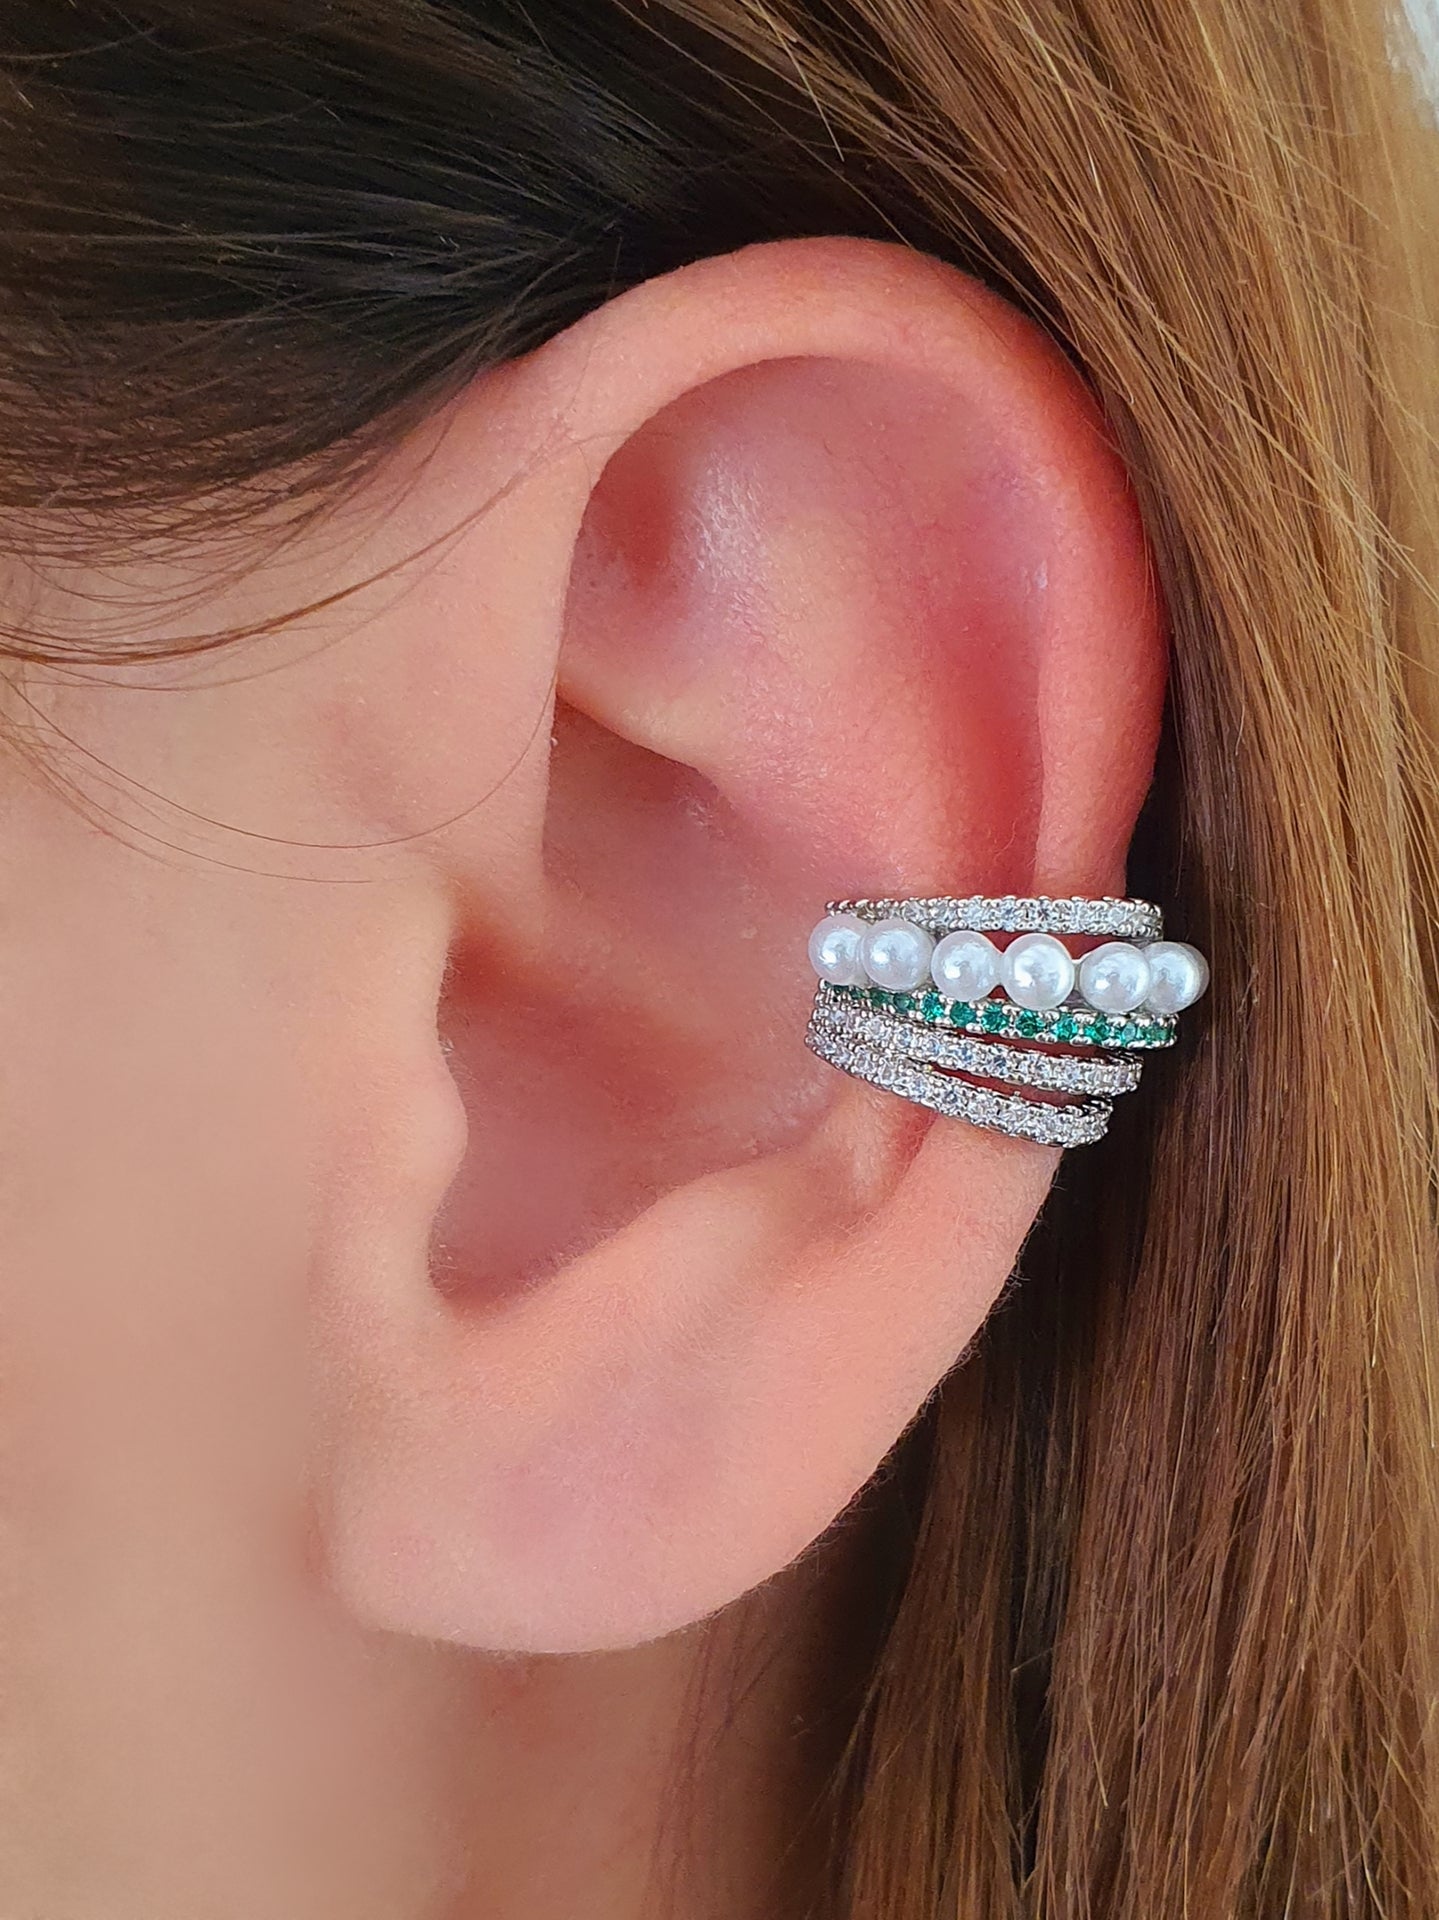 Ear cuff "Ariel" Silver con Pietre Smeraldo - 333HOPE333